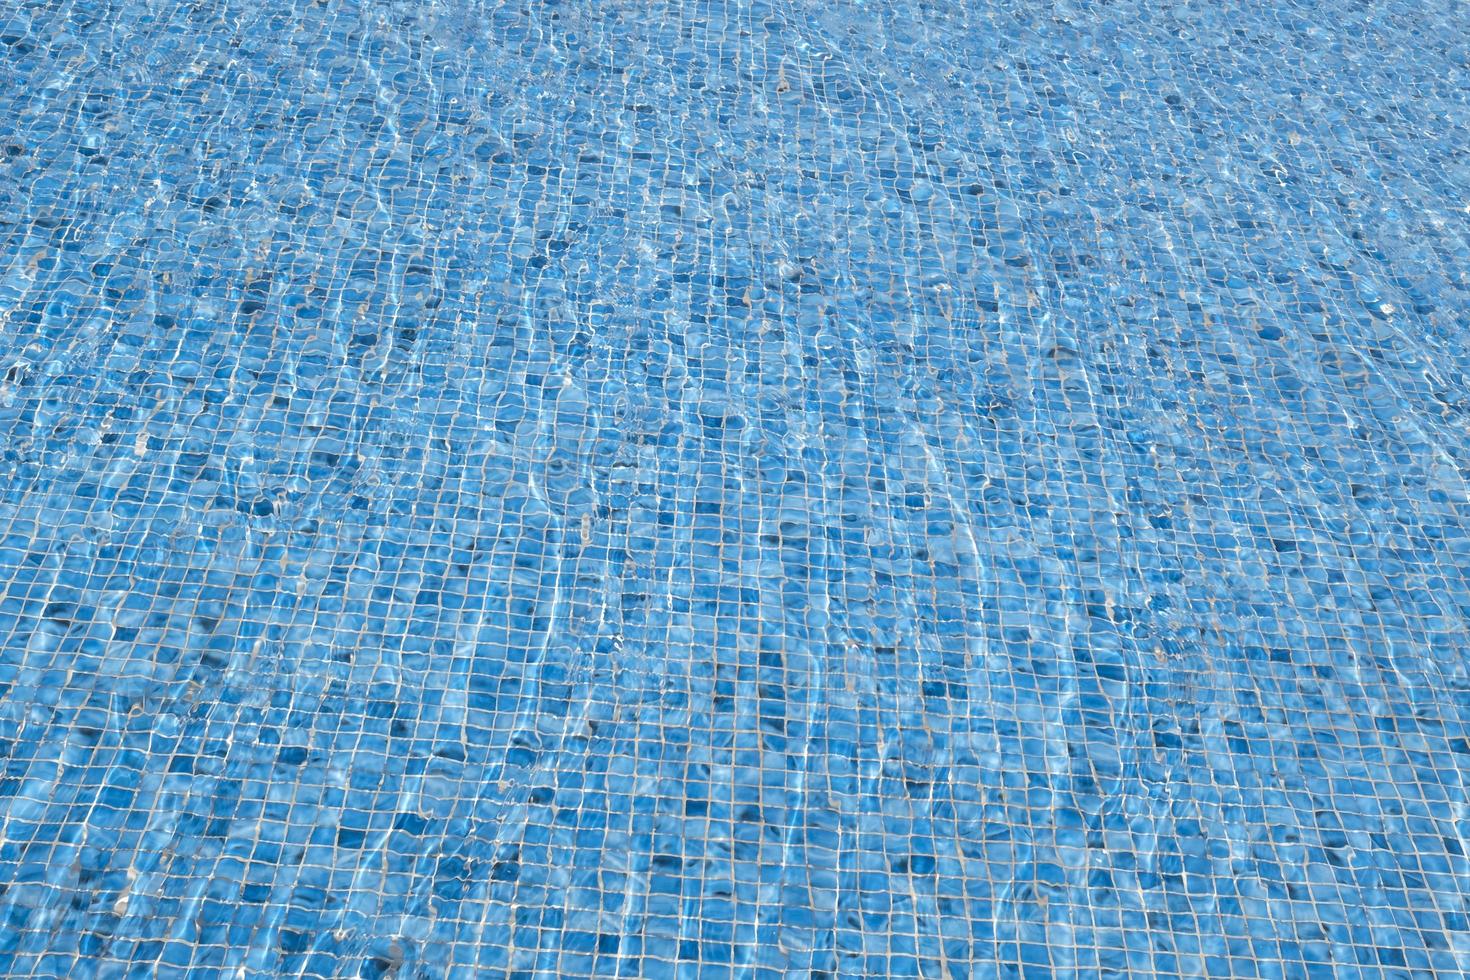 el viento hace ondular el agua. fondo abstracto de agua superficial clara. piscina azul que refleja el sol ondulado. patrón del fondo de la piscina hecho de azulejos azules de cerámica de mosaico ondulado. foto